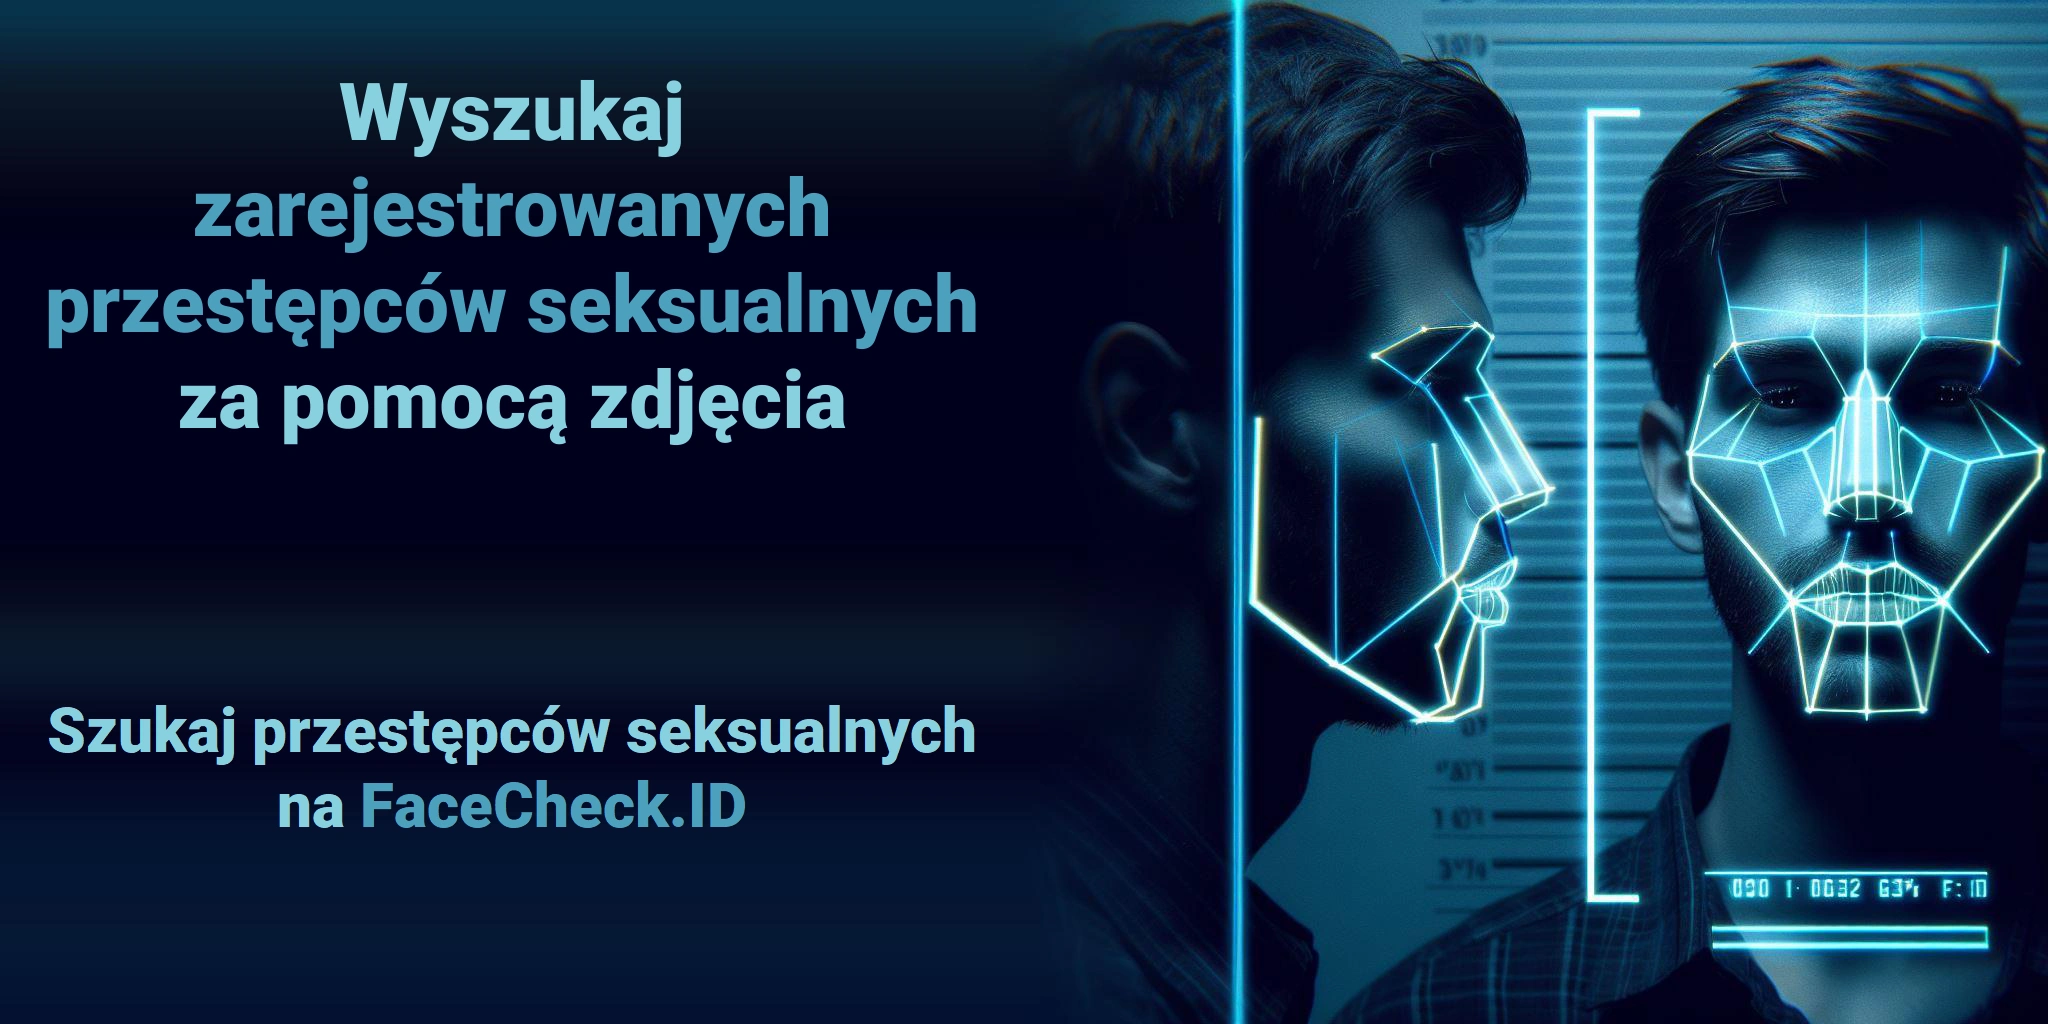 Wyszukaj zarejestrowanych przestępców seksualnych za pomocą zdjęcia  Szukaj przestępców seksualnych na FaceCheck.ID 